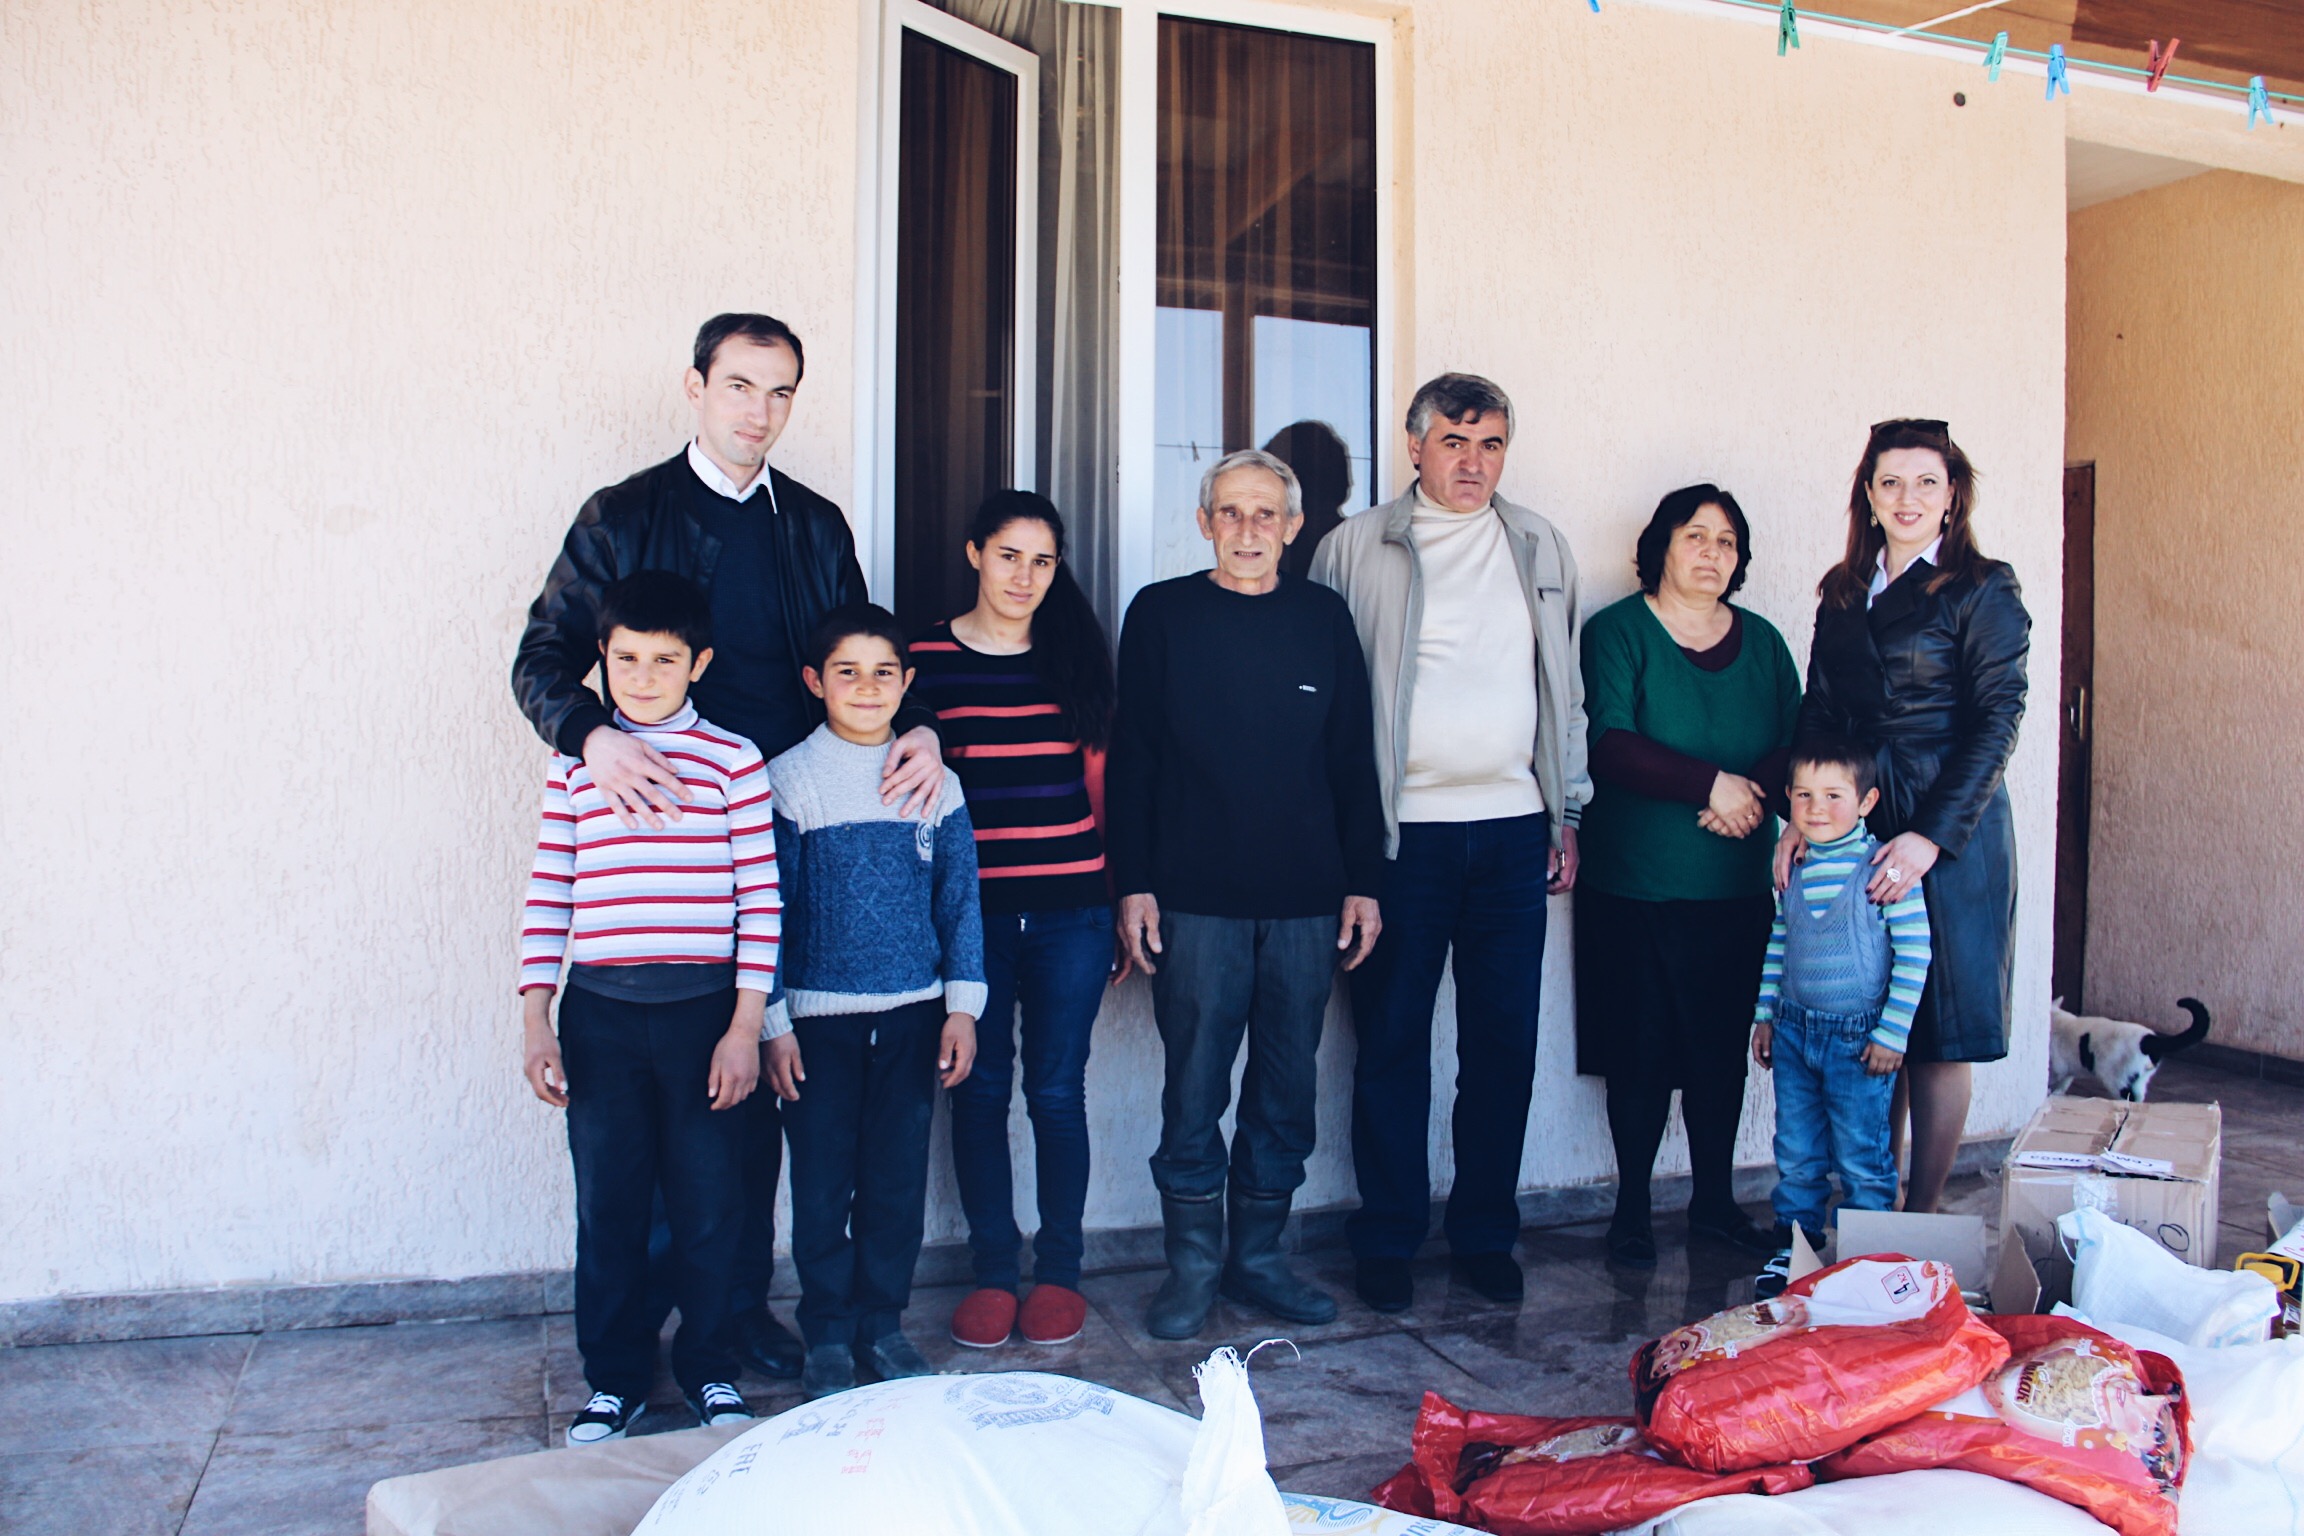 مواصلة غرفة تجارة و صناعة جمهورية أبخازيا فعل الخير في مساعد الأسر المحتاجة .